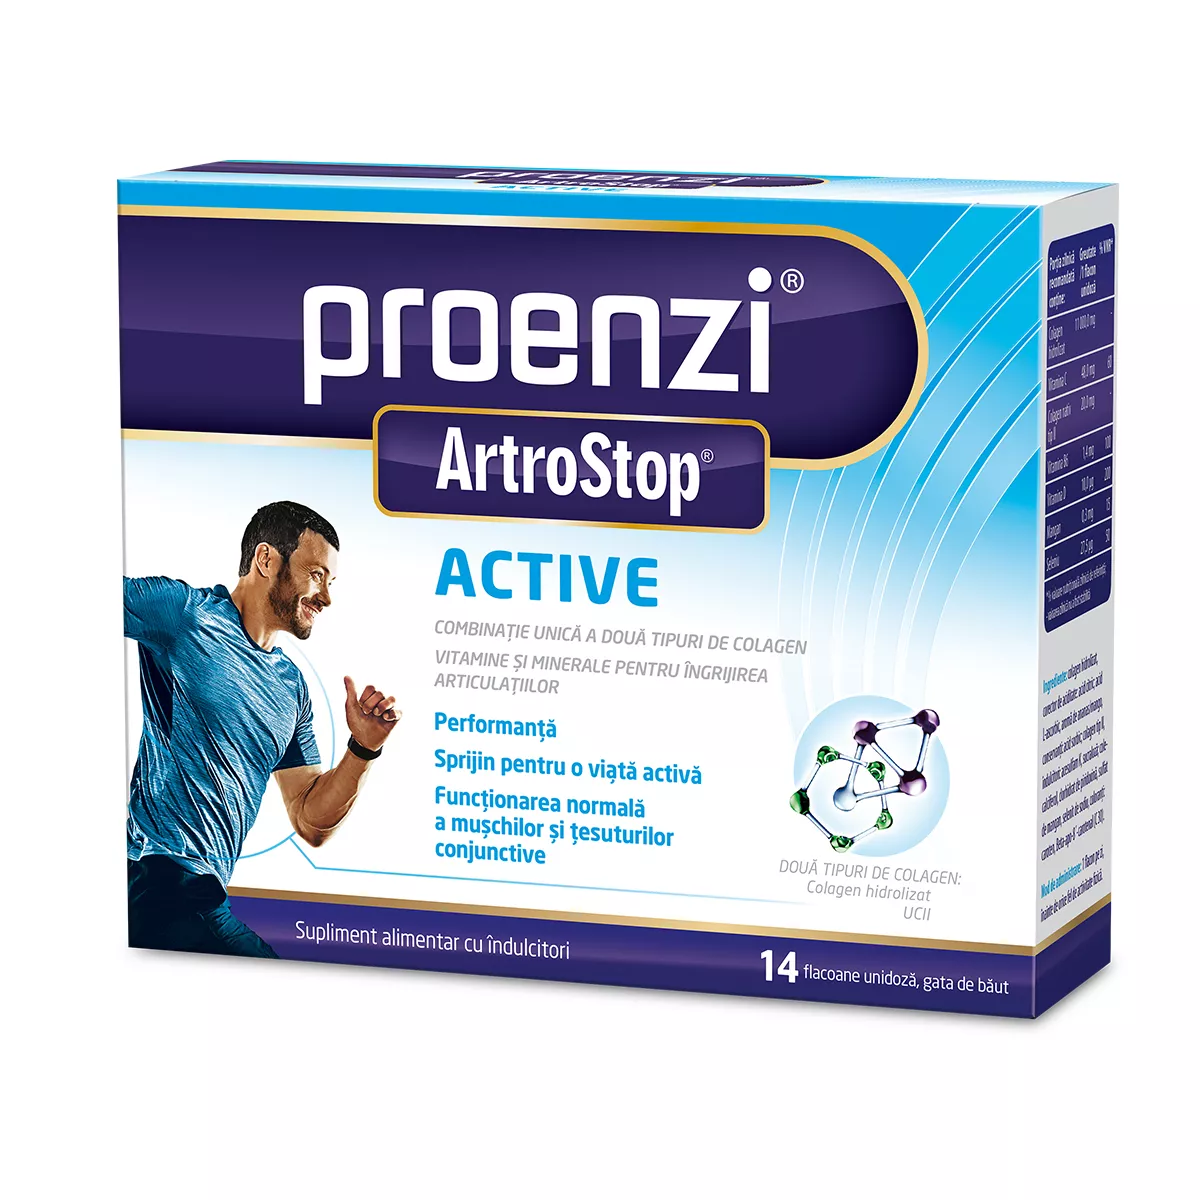 Proenzi Artrostop Active, 14 flacoane, Walmark, [],remediumfarm.ro